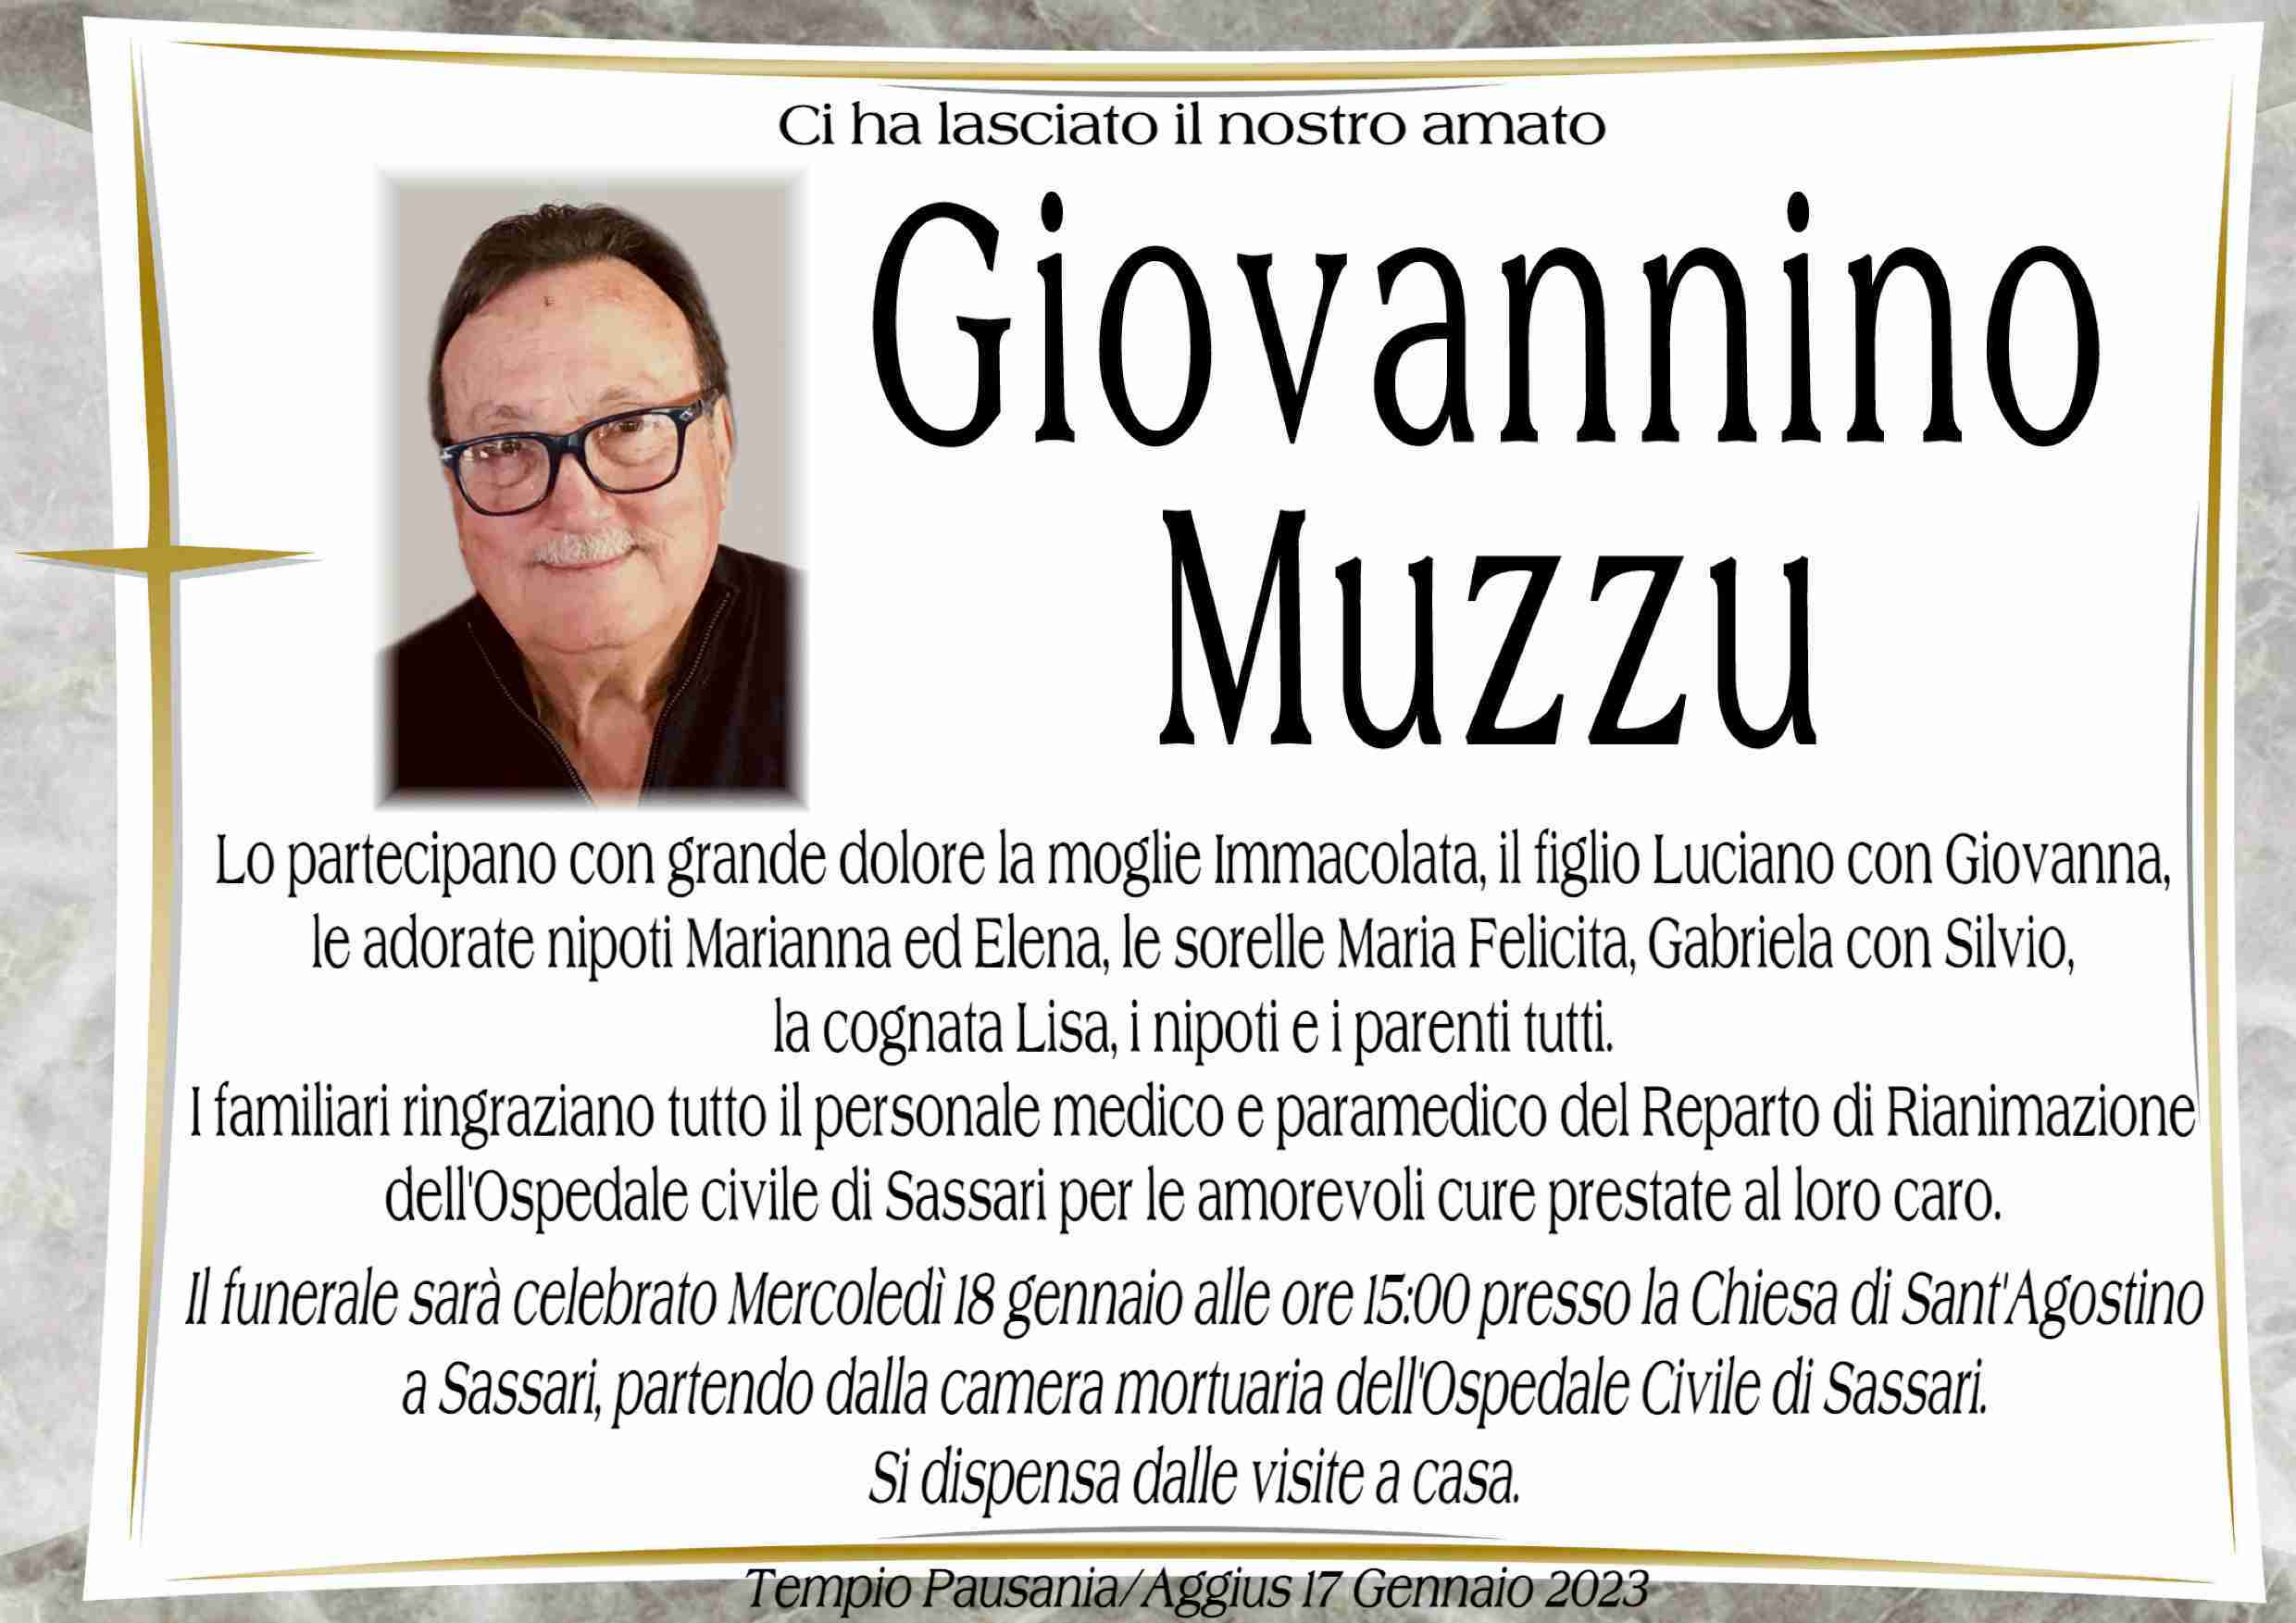 Giovannino Muzzu